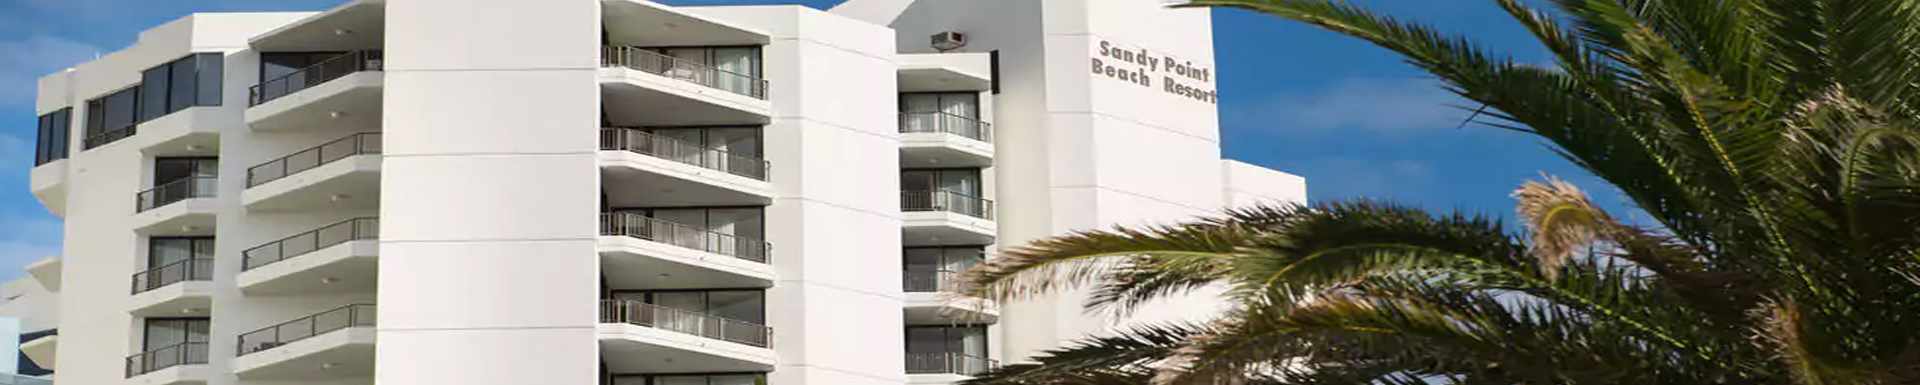 Sandy Point Beach Resort